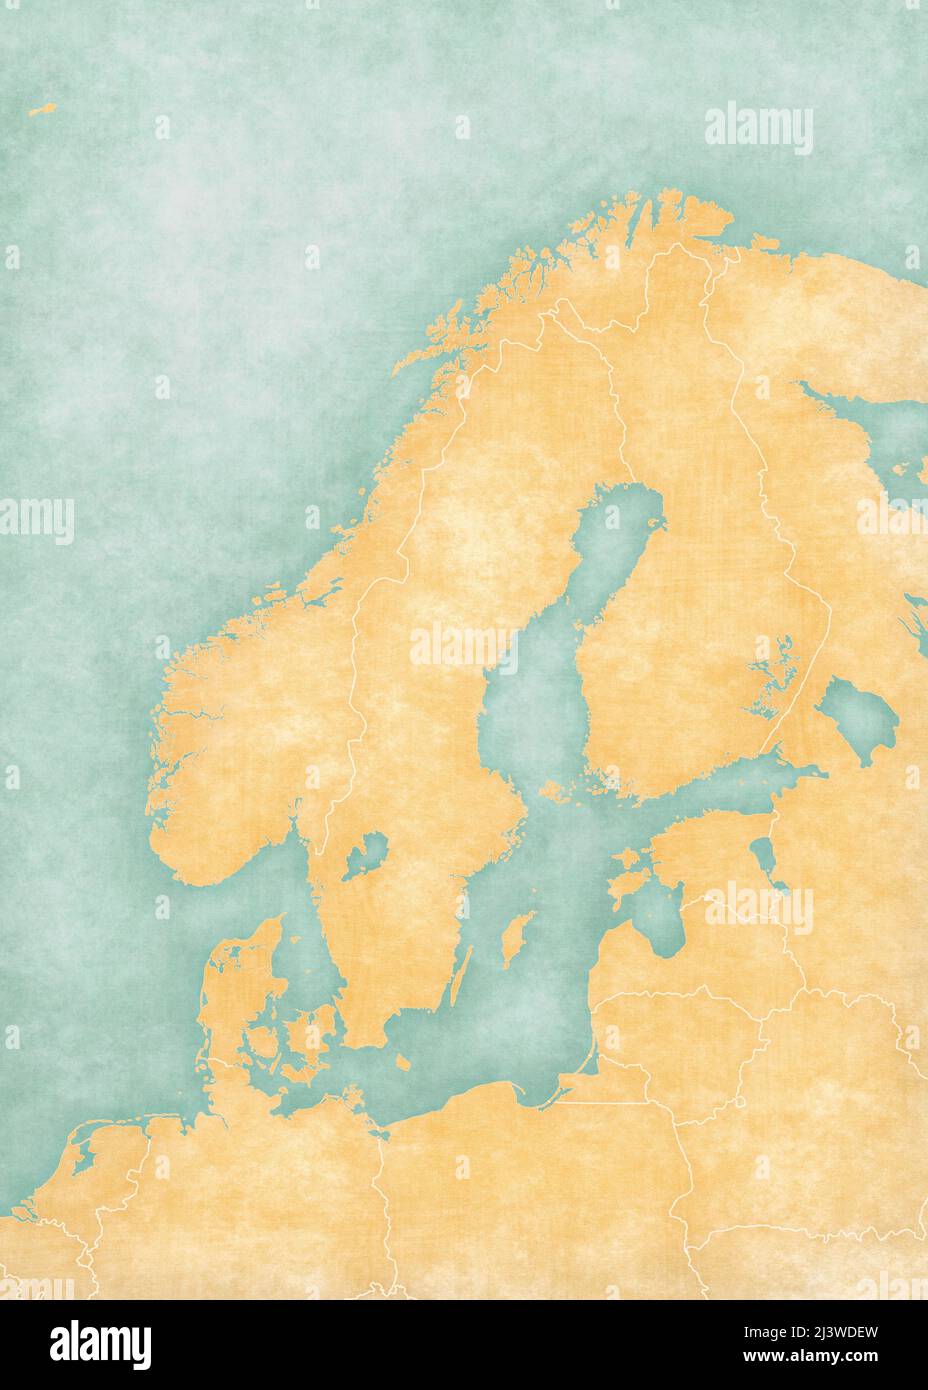 Mappa vuota della Scandinavia con confini nazionali. La mappa è in morbido grunge e vintage stile, come la pittura acquerello su carta vecchia. Foto Stock